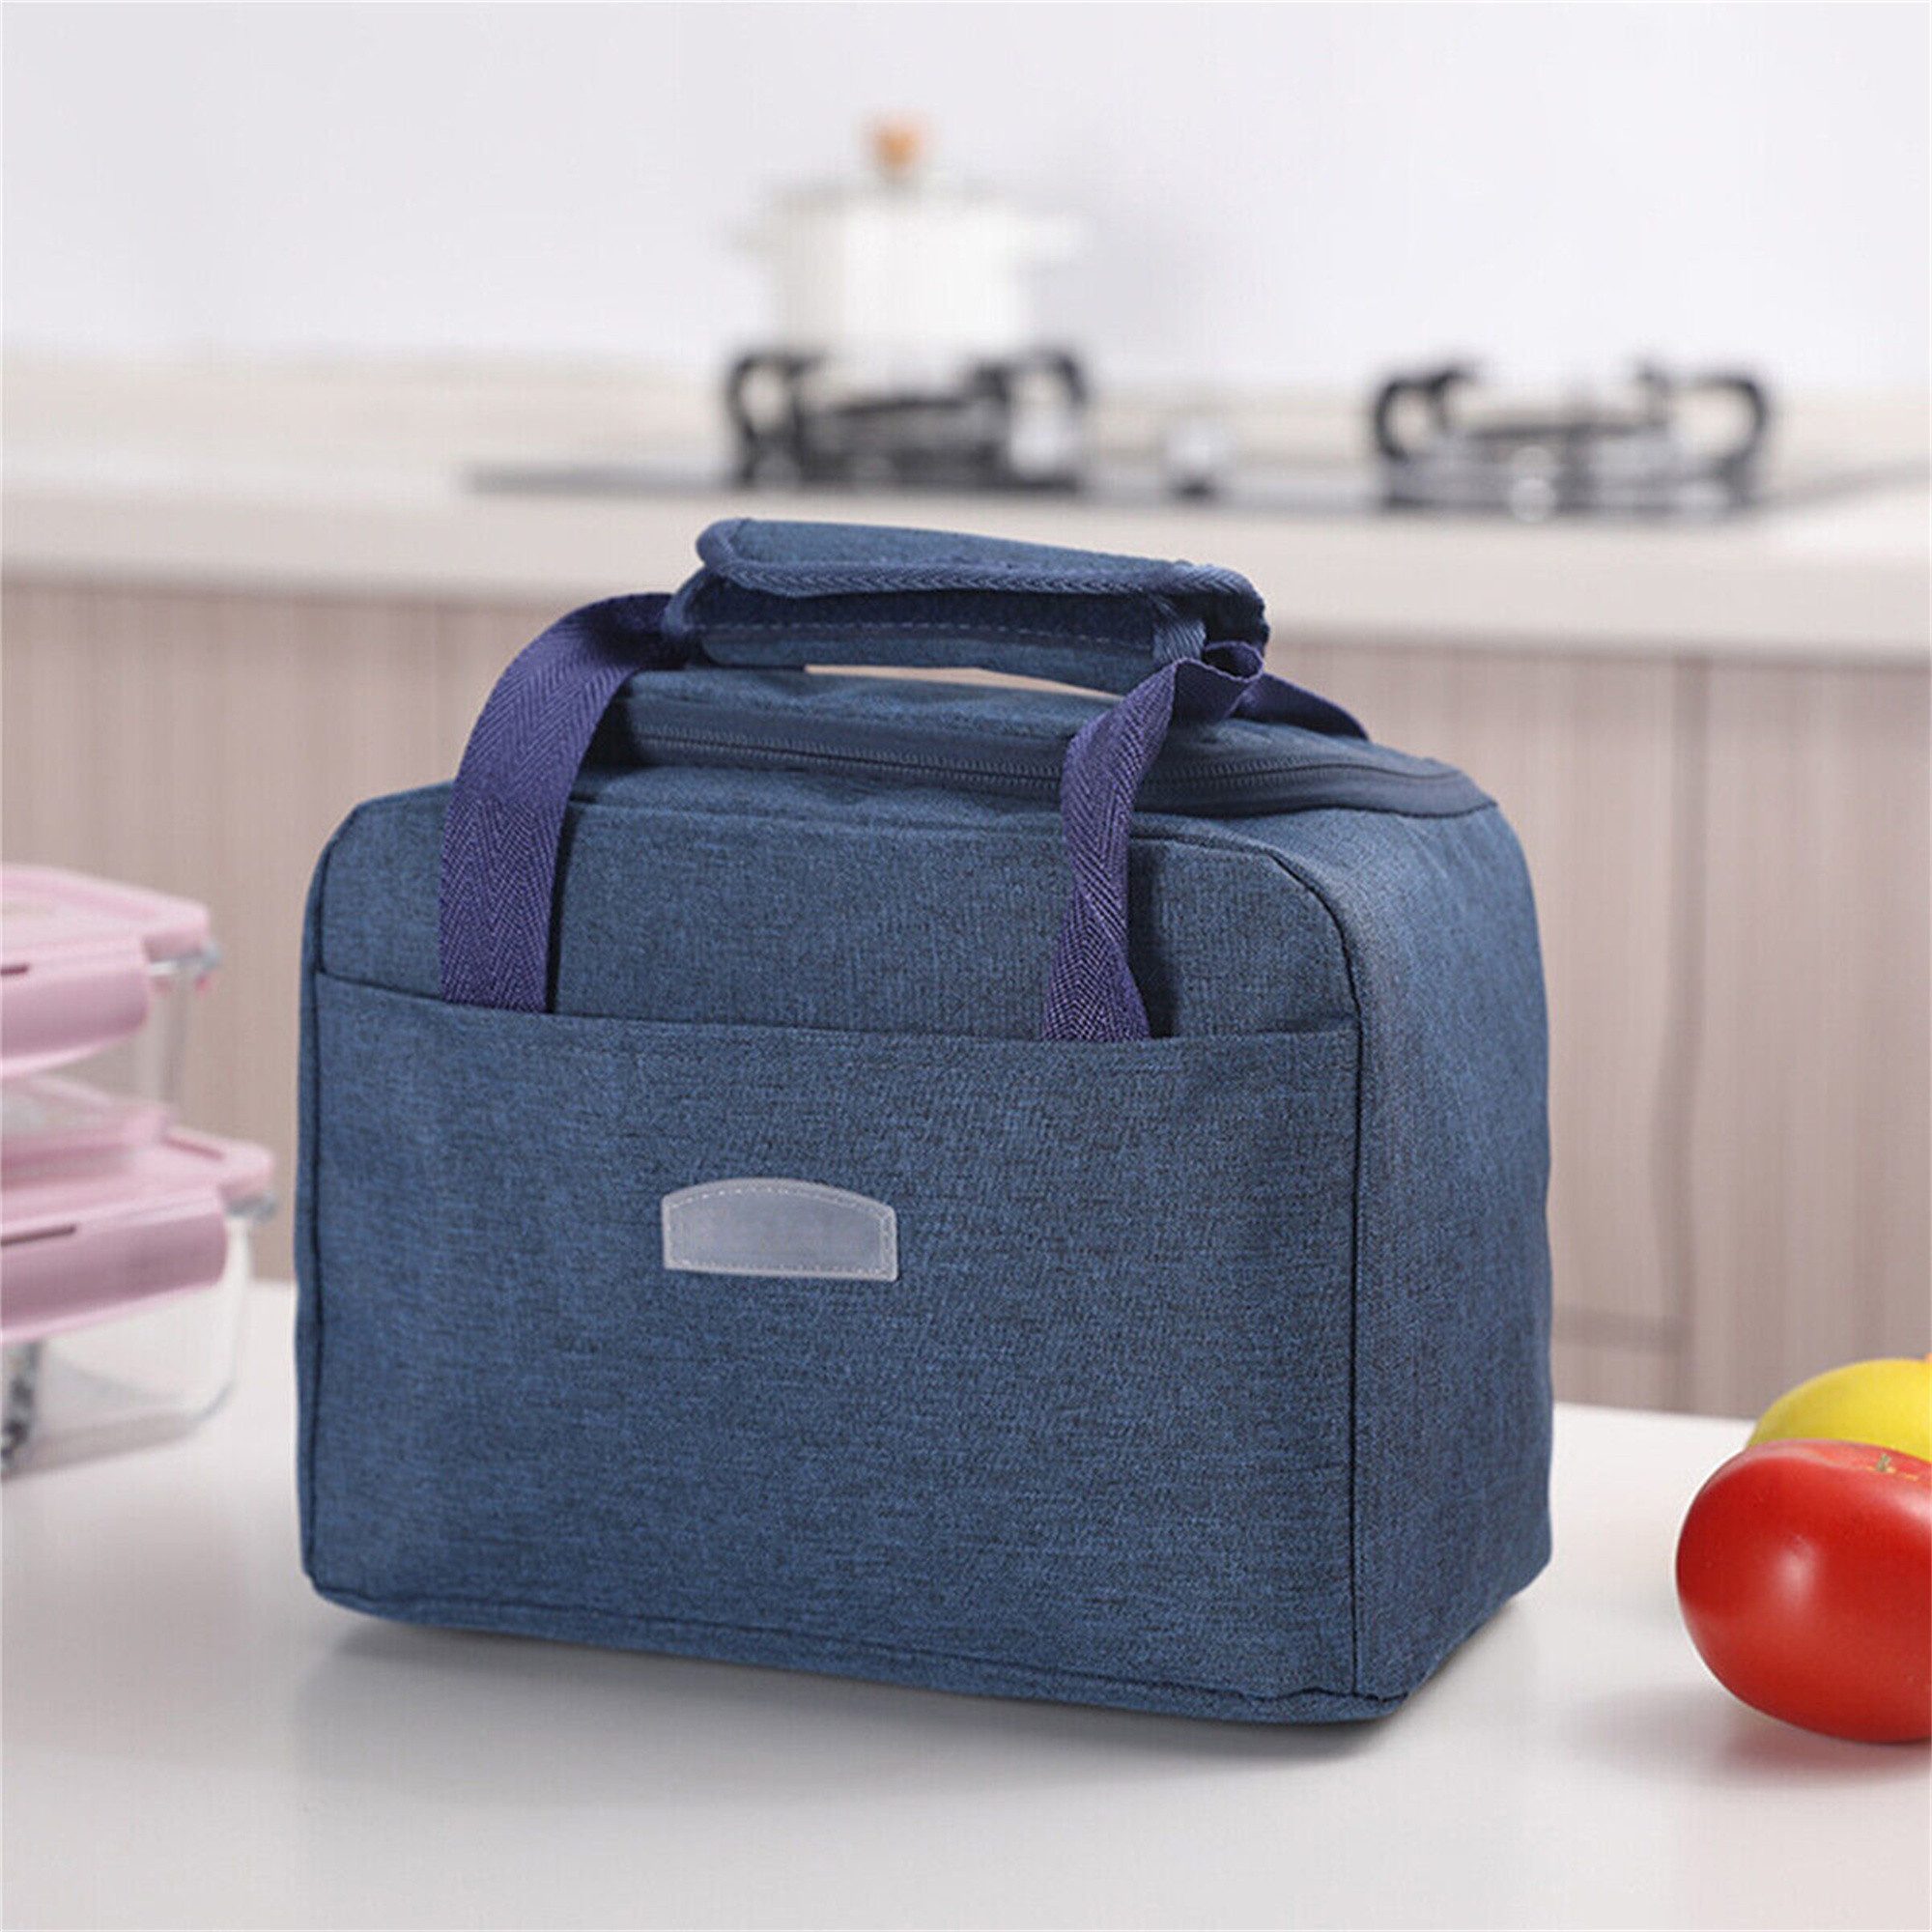 yozhiqu Lunchbox Tragbares Lunch-Wärmer-Taschen-Set,geeignet für Schule, Büro, Picknick, Einfaches Tragen des Mittagessens und Warmhalten der Speisen